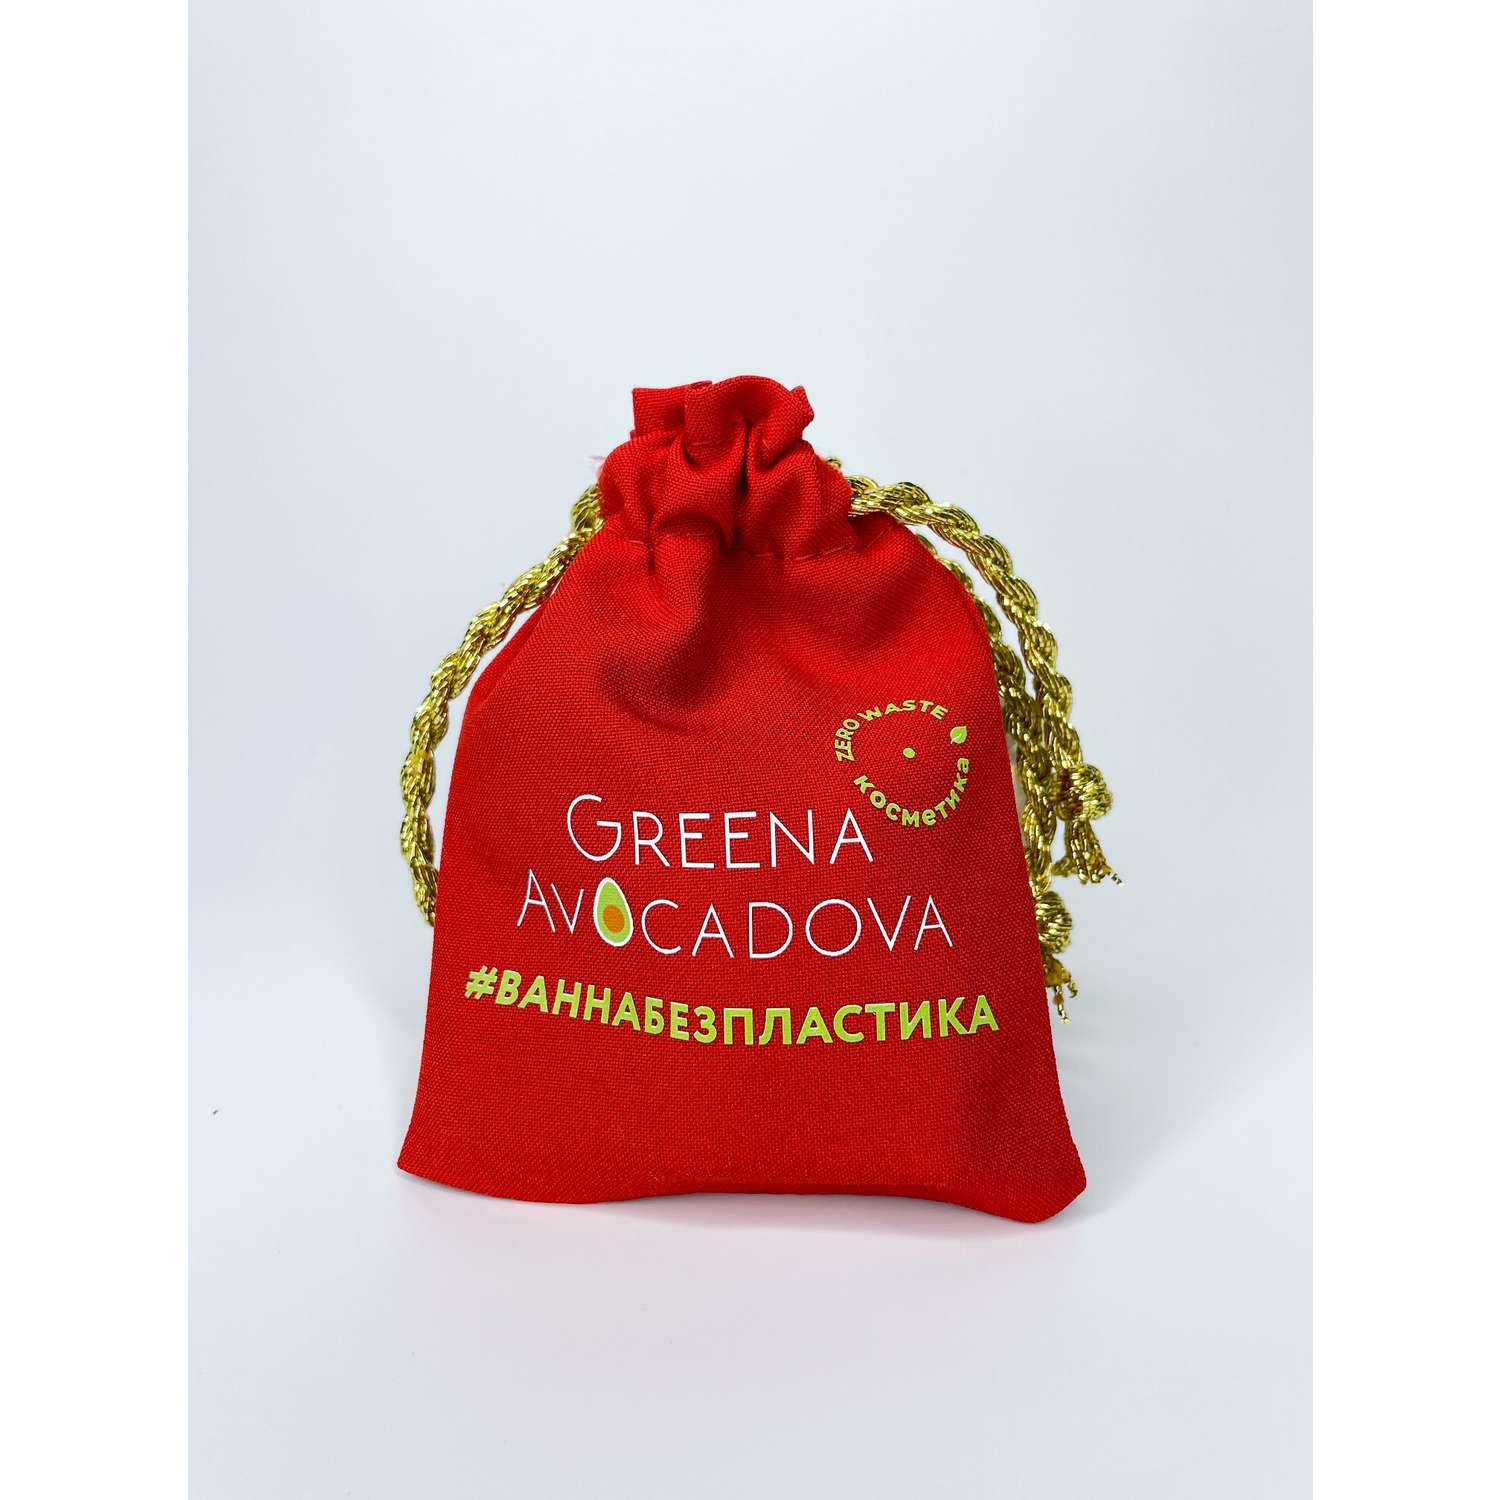 Подарочный набор косметики Greena Avocadova ручной работы красный - фото 3